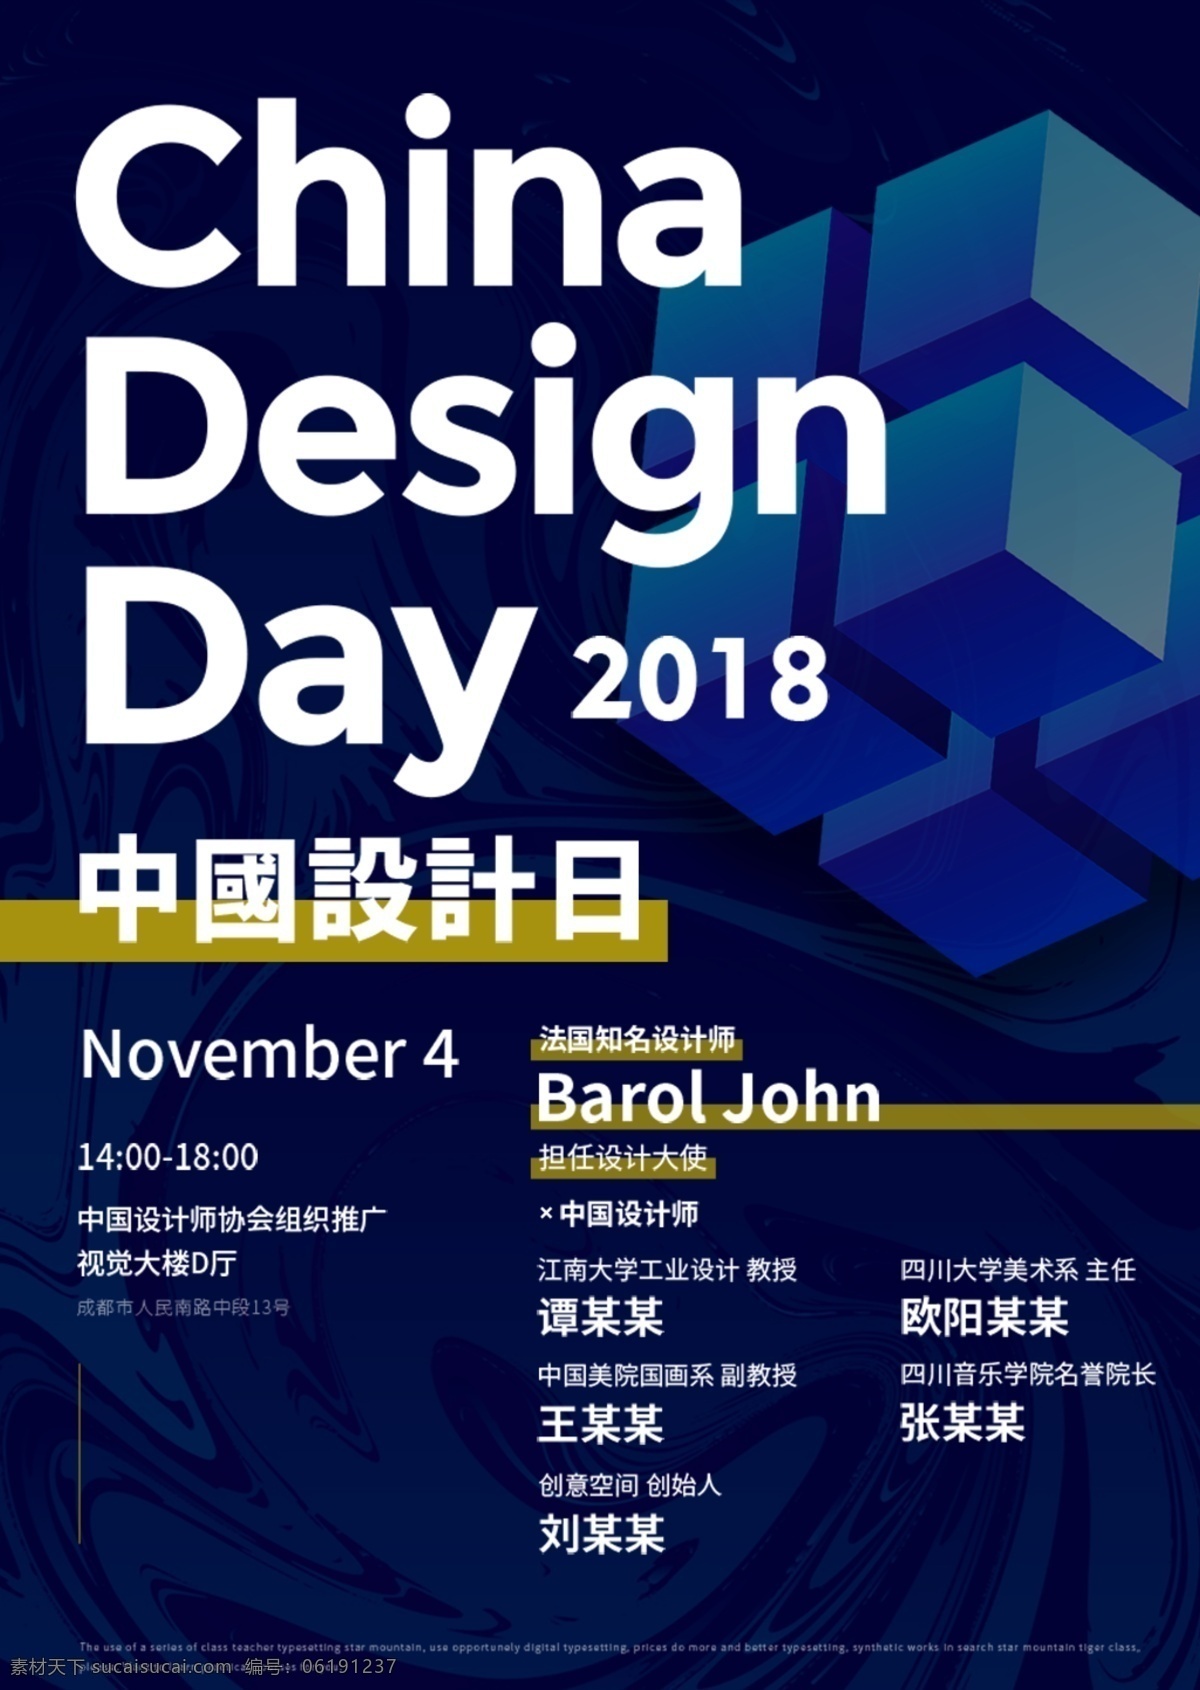 中国 日 蓝色 海报 设计日 中国设计日 蓝色文字海报 字体海报 2018